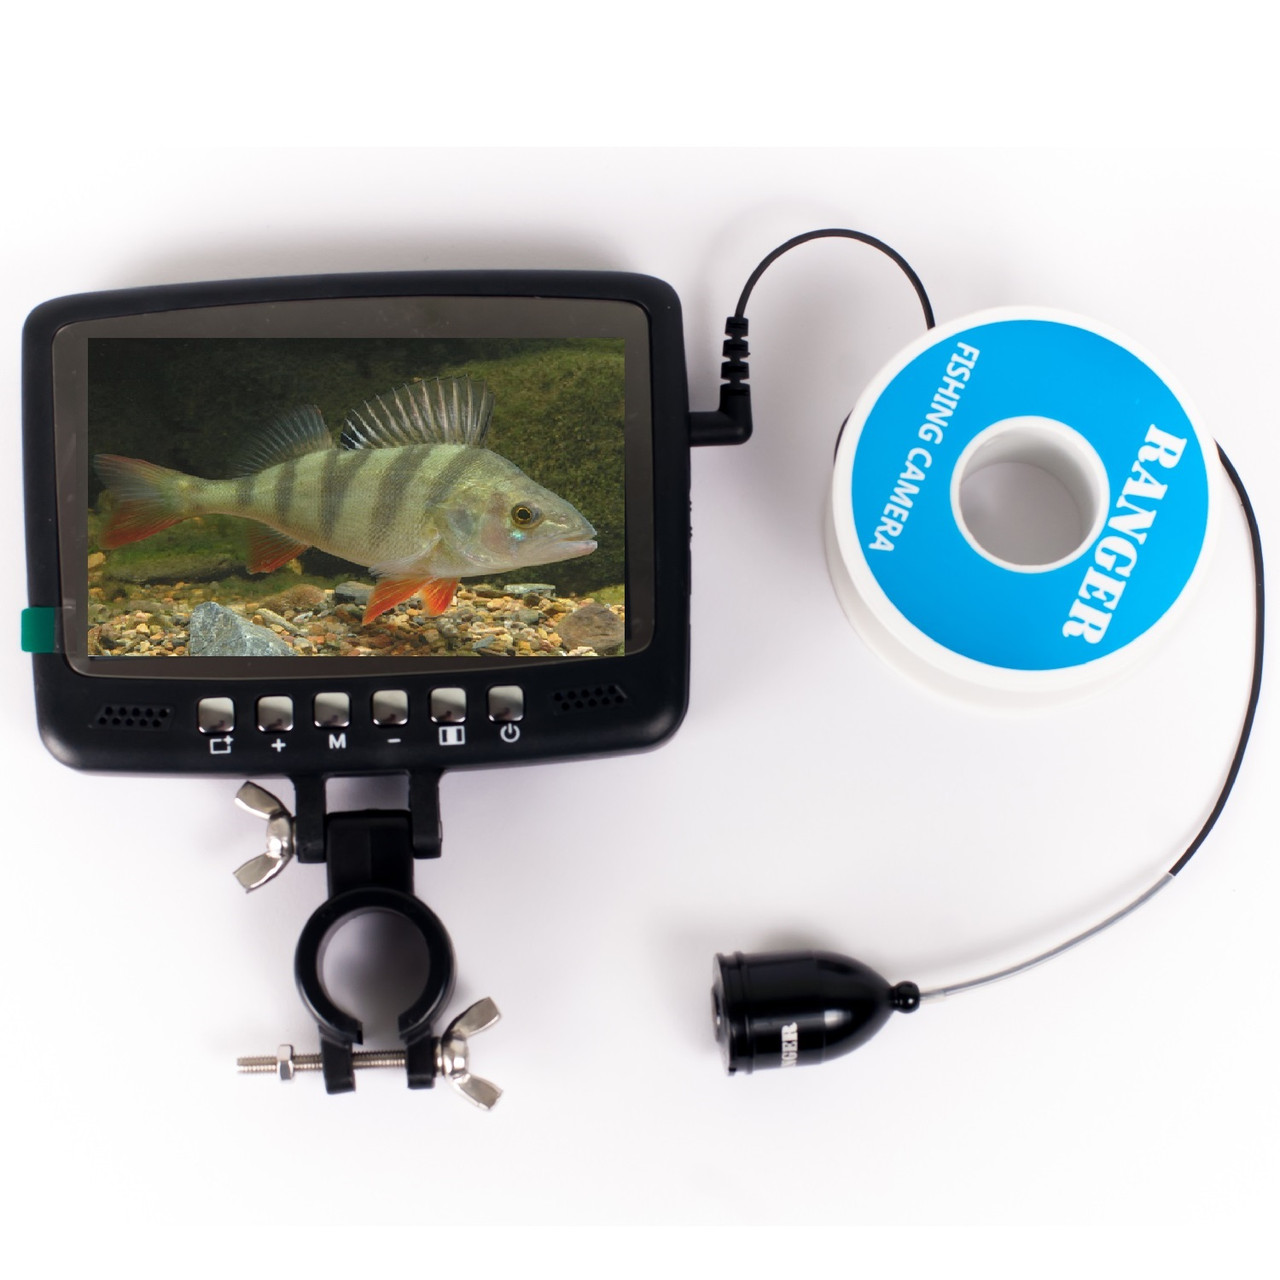 Підводна камера для риболовлі Ranger Lux 11 (4,3 дюйма з роздільною здатністю 480х272)